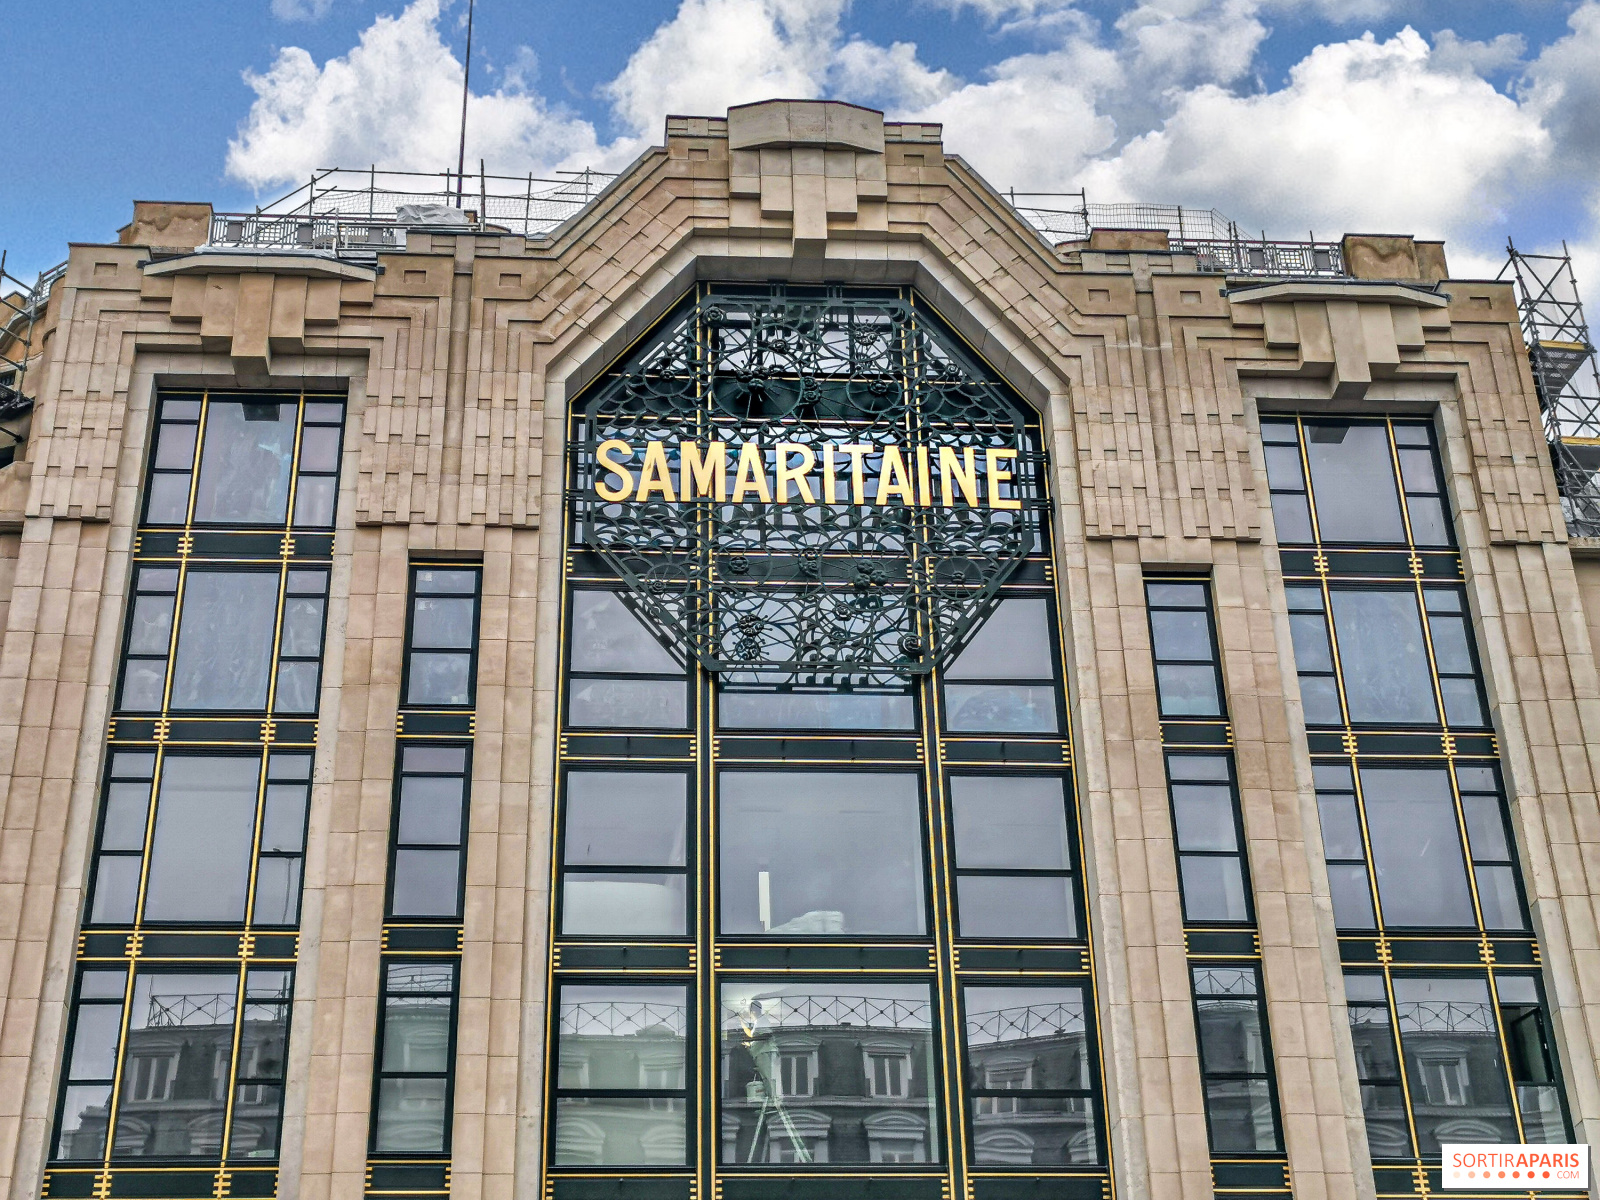 La Samaritaine: A Place to Rest your Tête